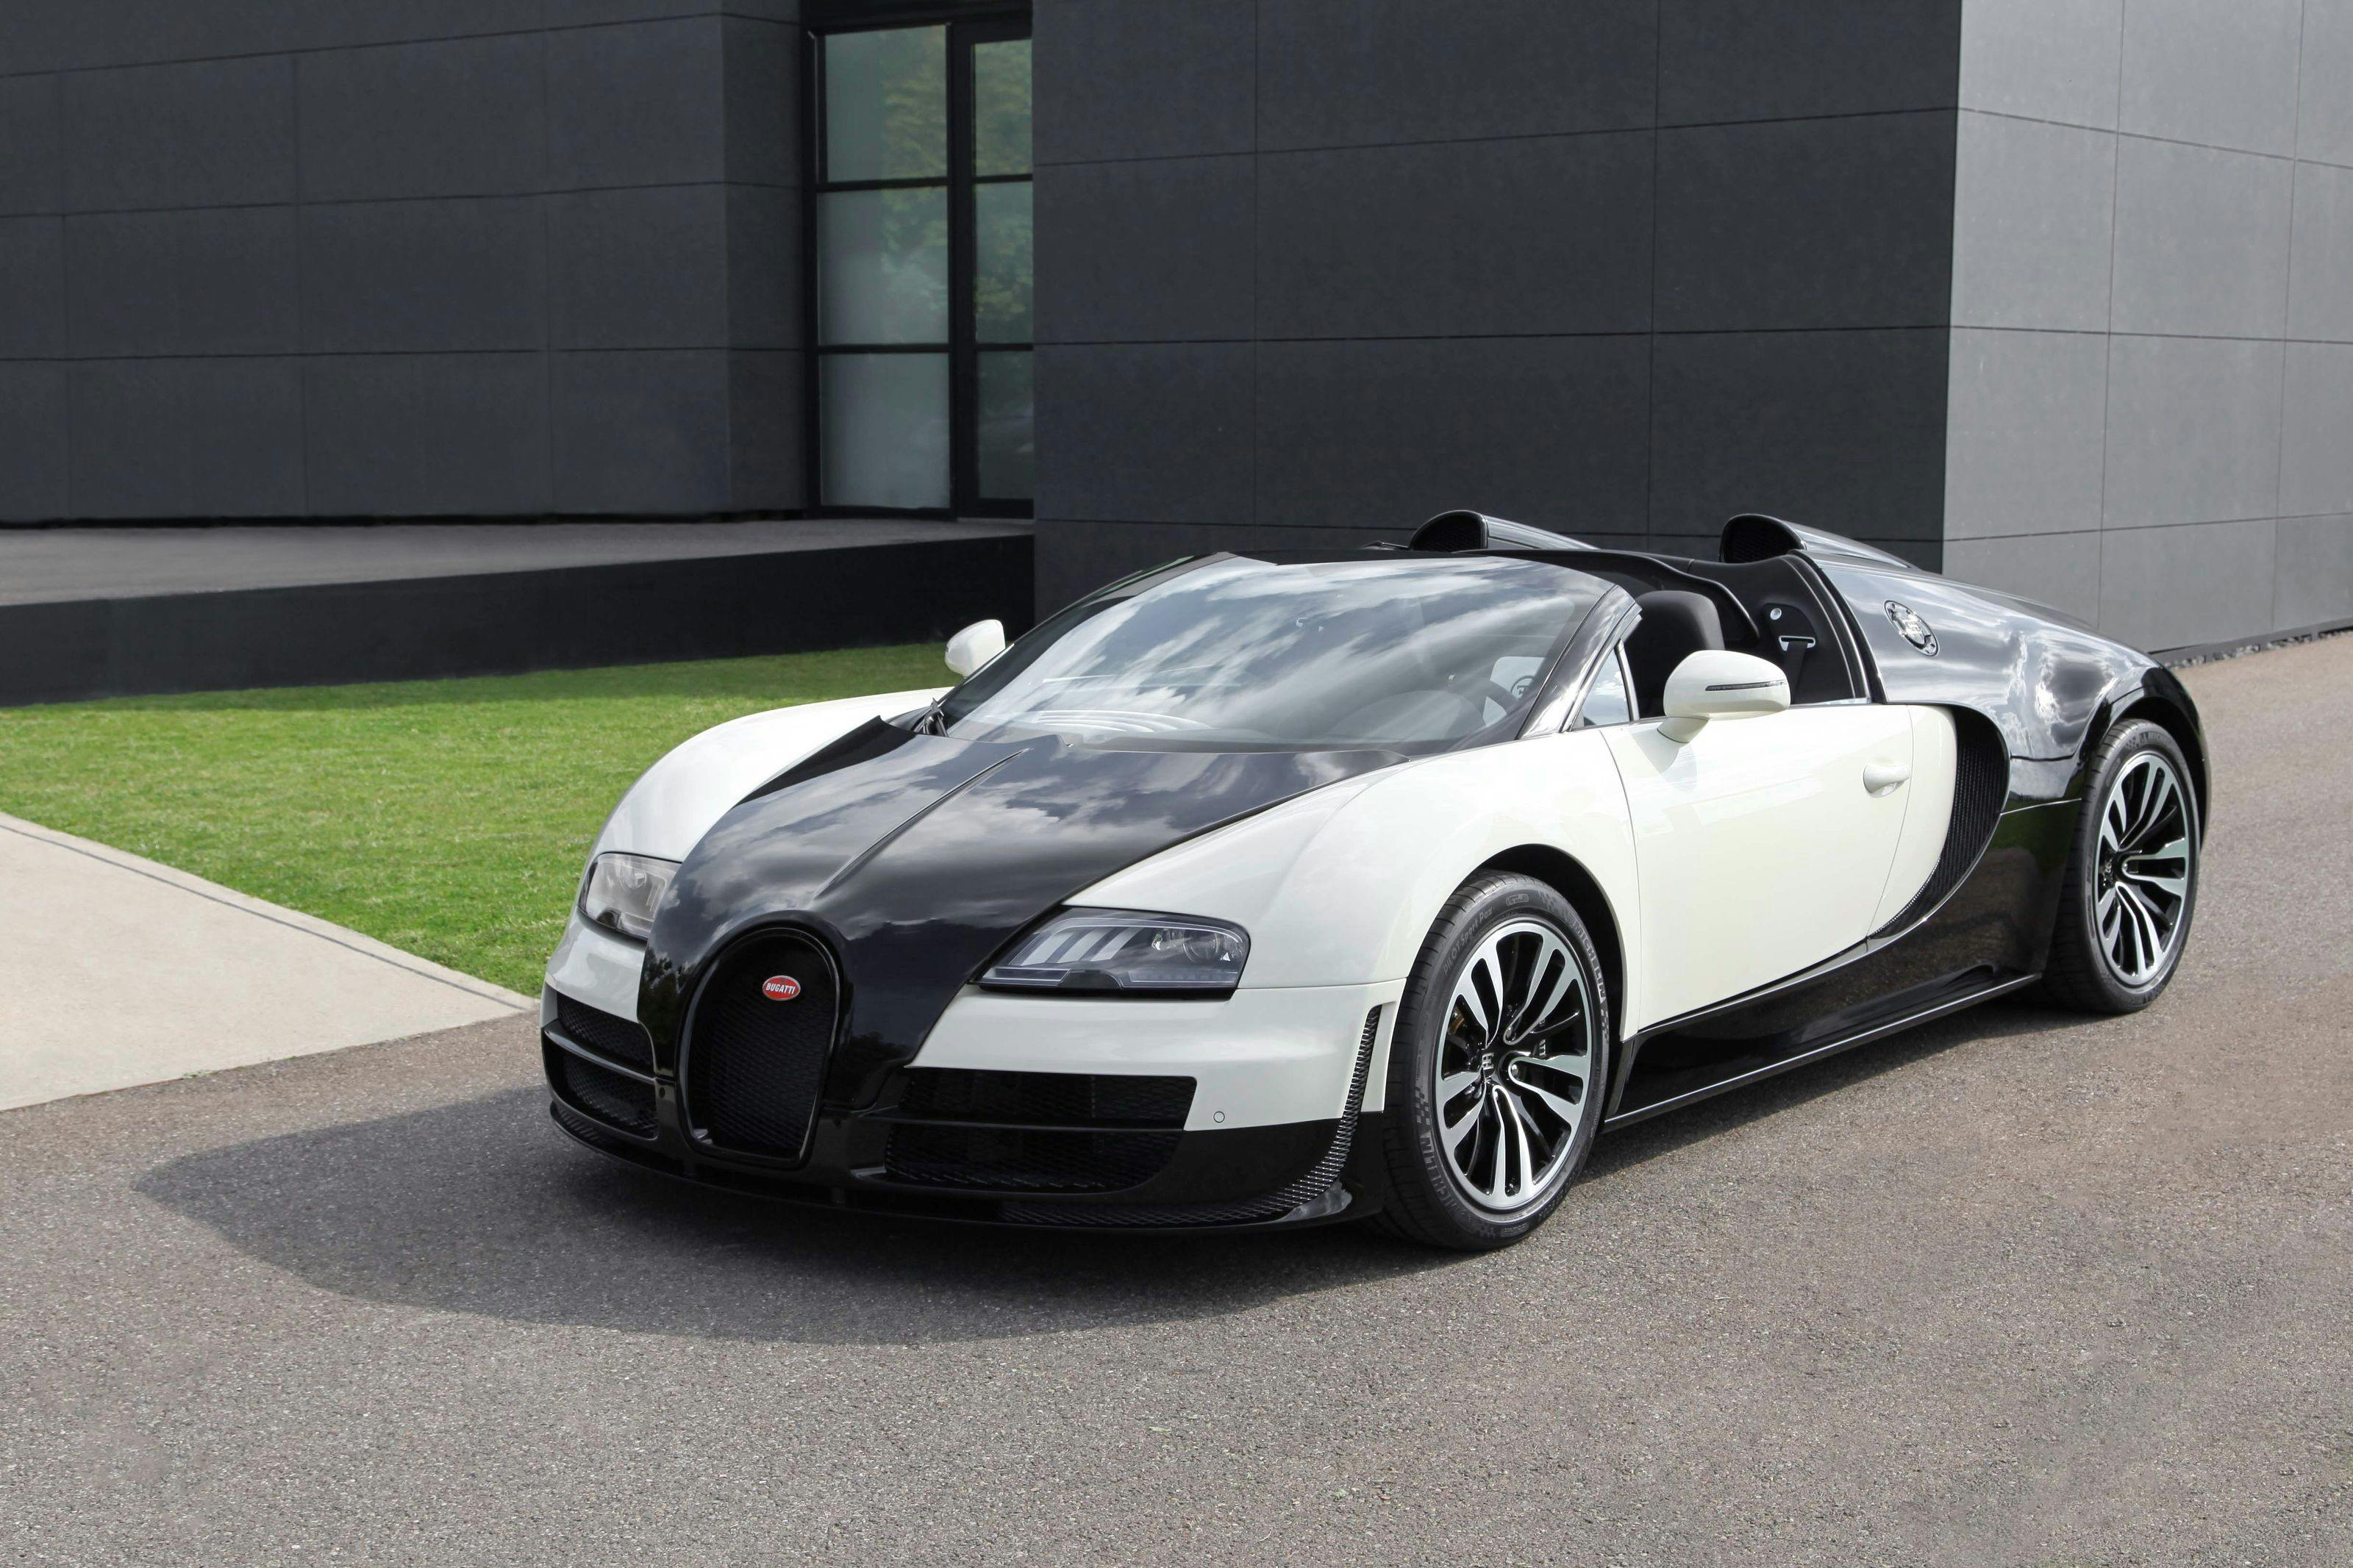 Qatar International Motor Show 2014: Internationale Messepremiere für den Bugatti Veyron 16.4 Grand Sport Vitesse „Lang Lang“